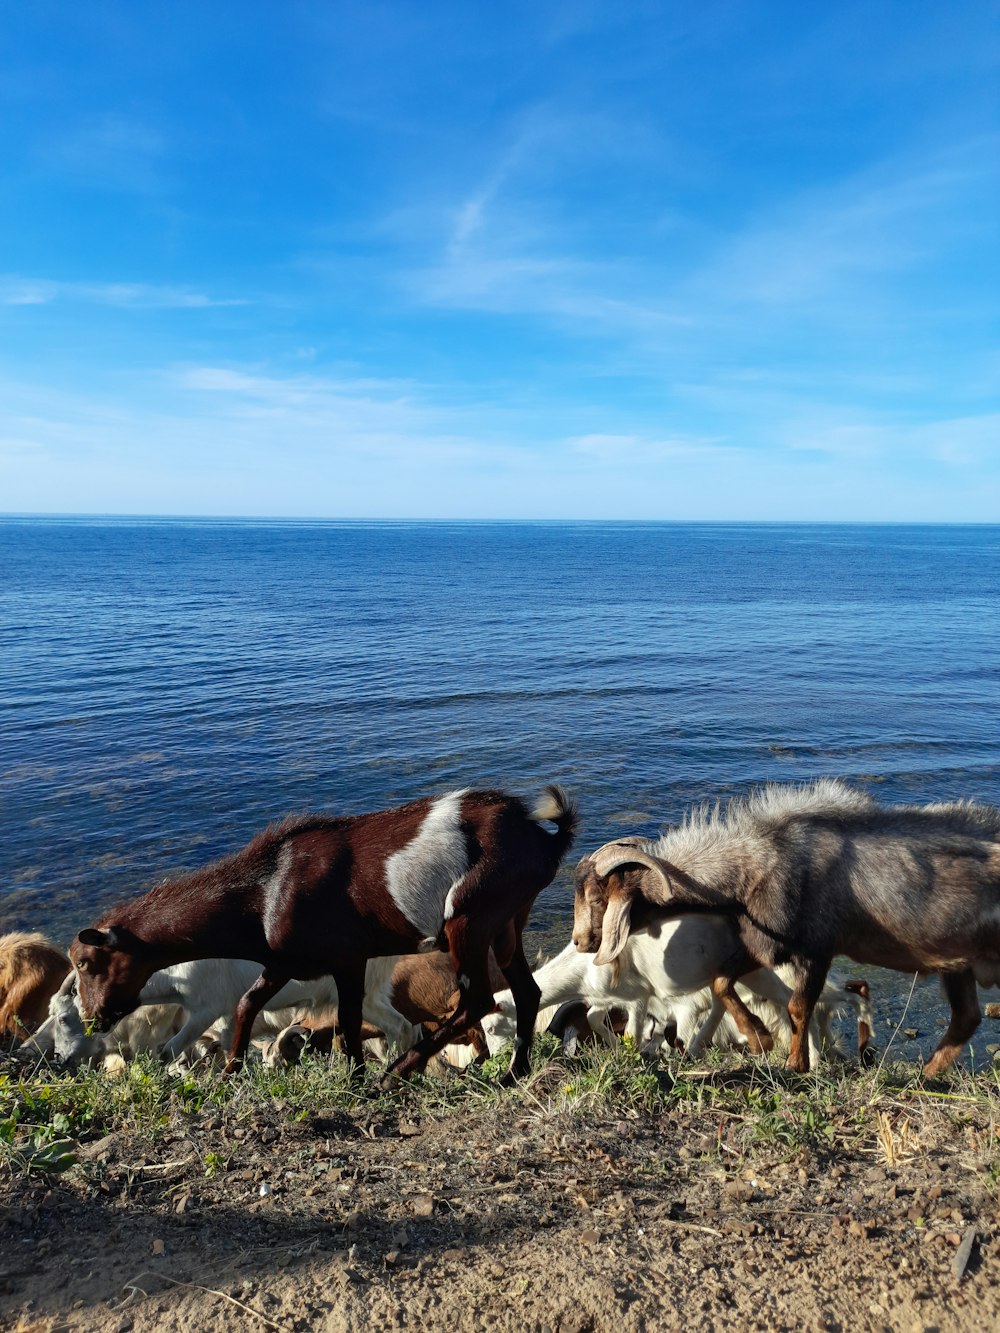 Una manada de caballos caminando por una playa junto al océano